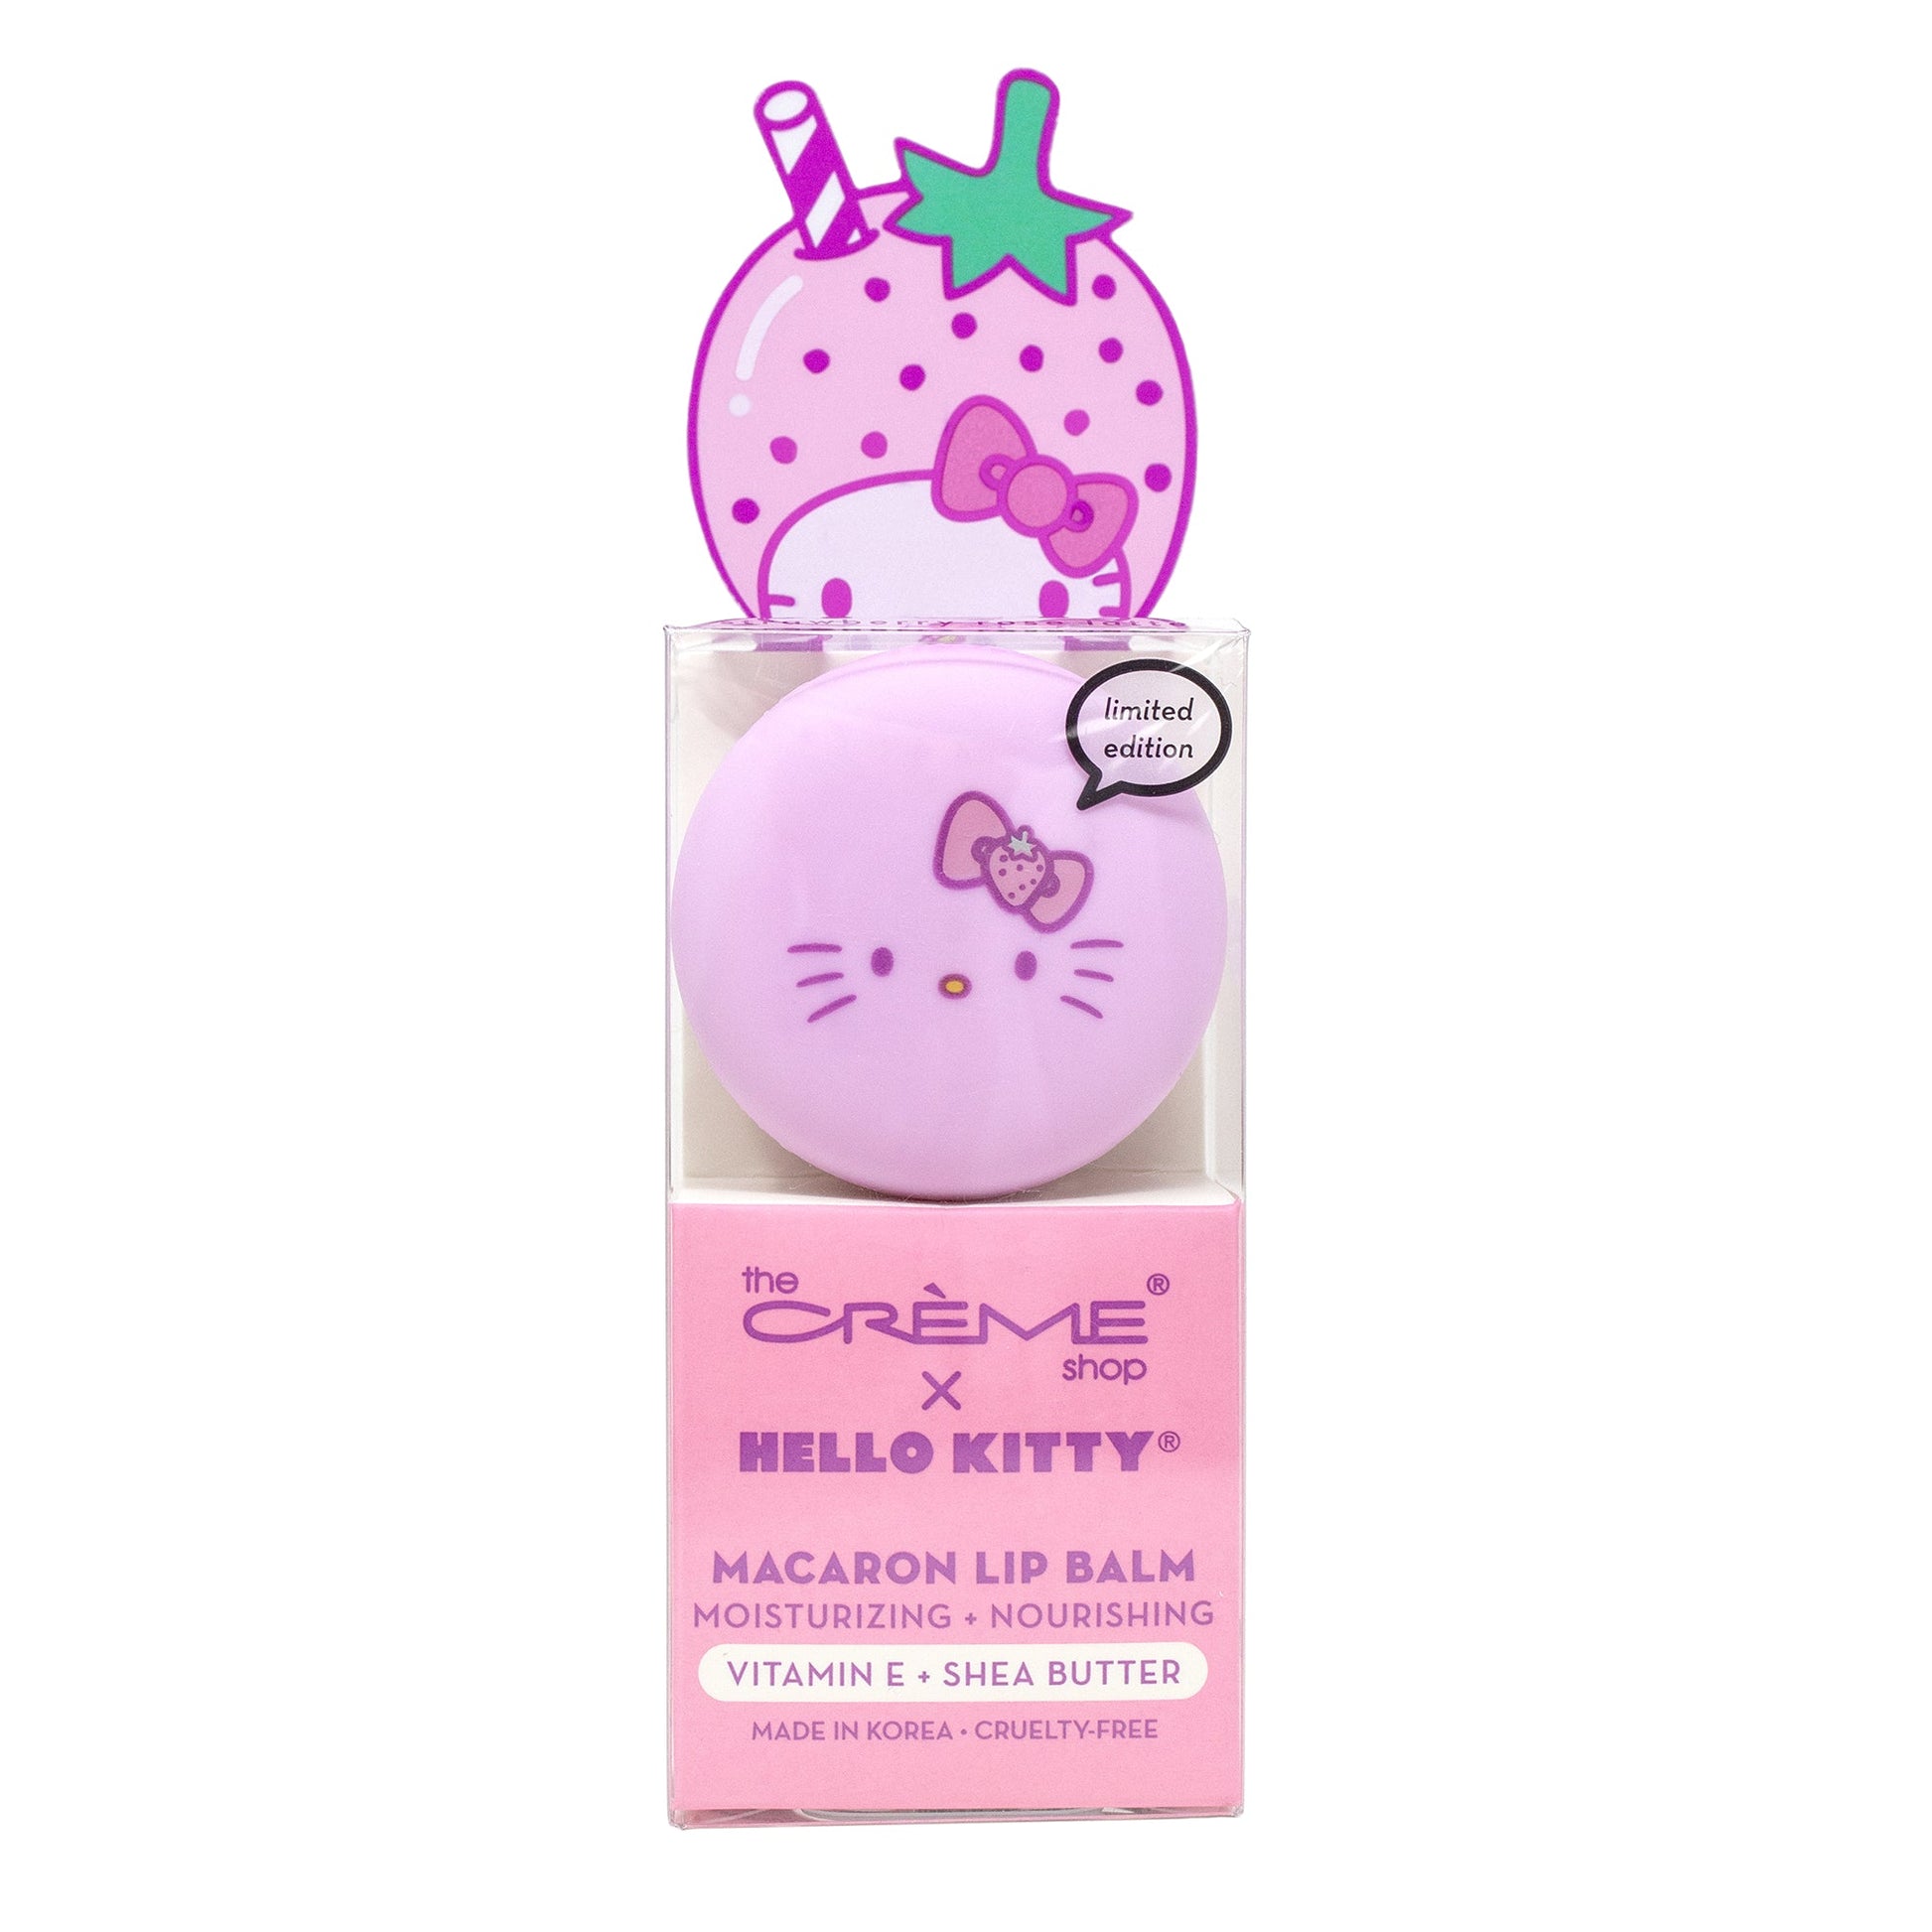 The Crème Shop x Hello Kitty Macaron Lip Balm - Strawberry Rose Latte Lip Balms The Crème Shop x Sanrio 